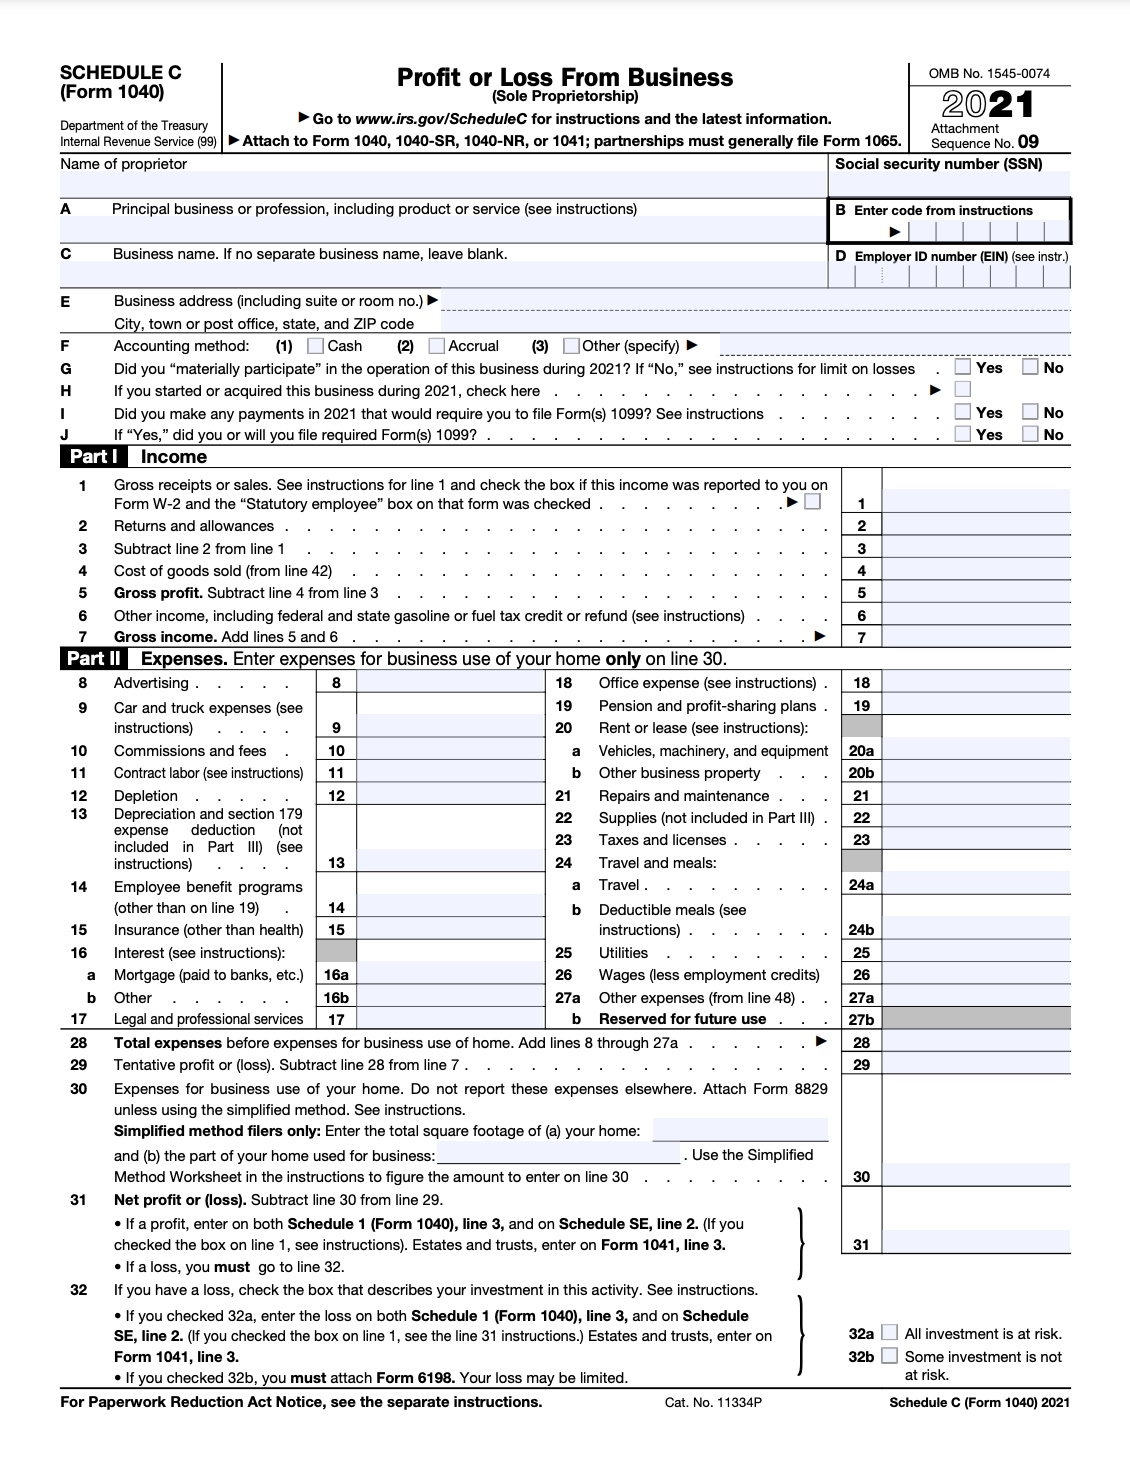 1040 tax form schedule c